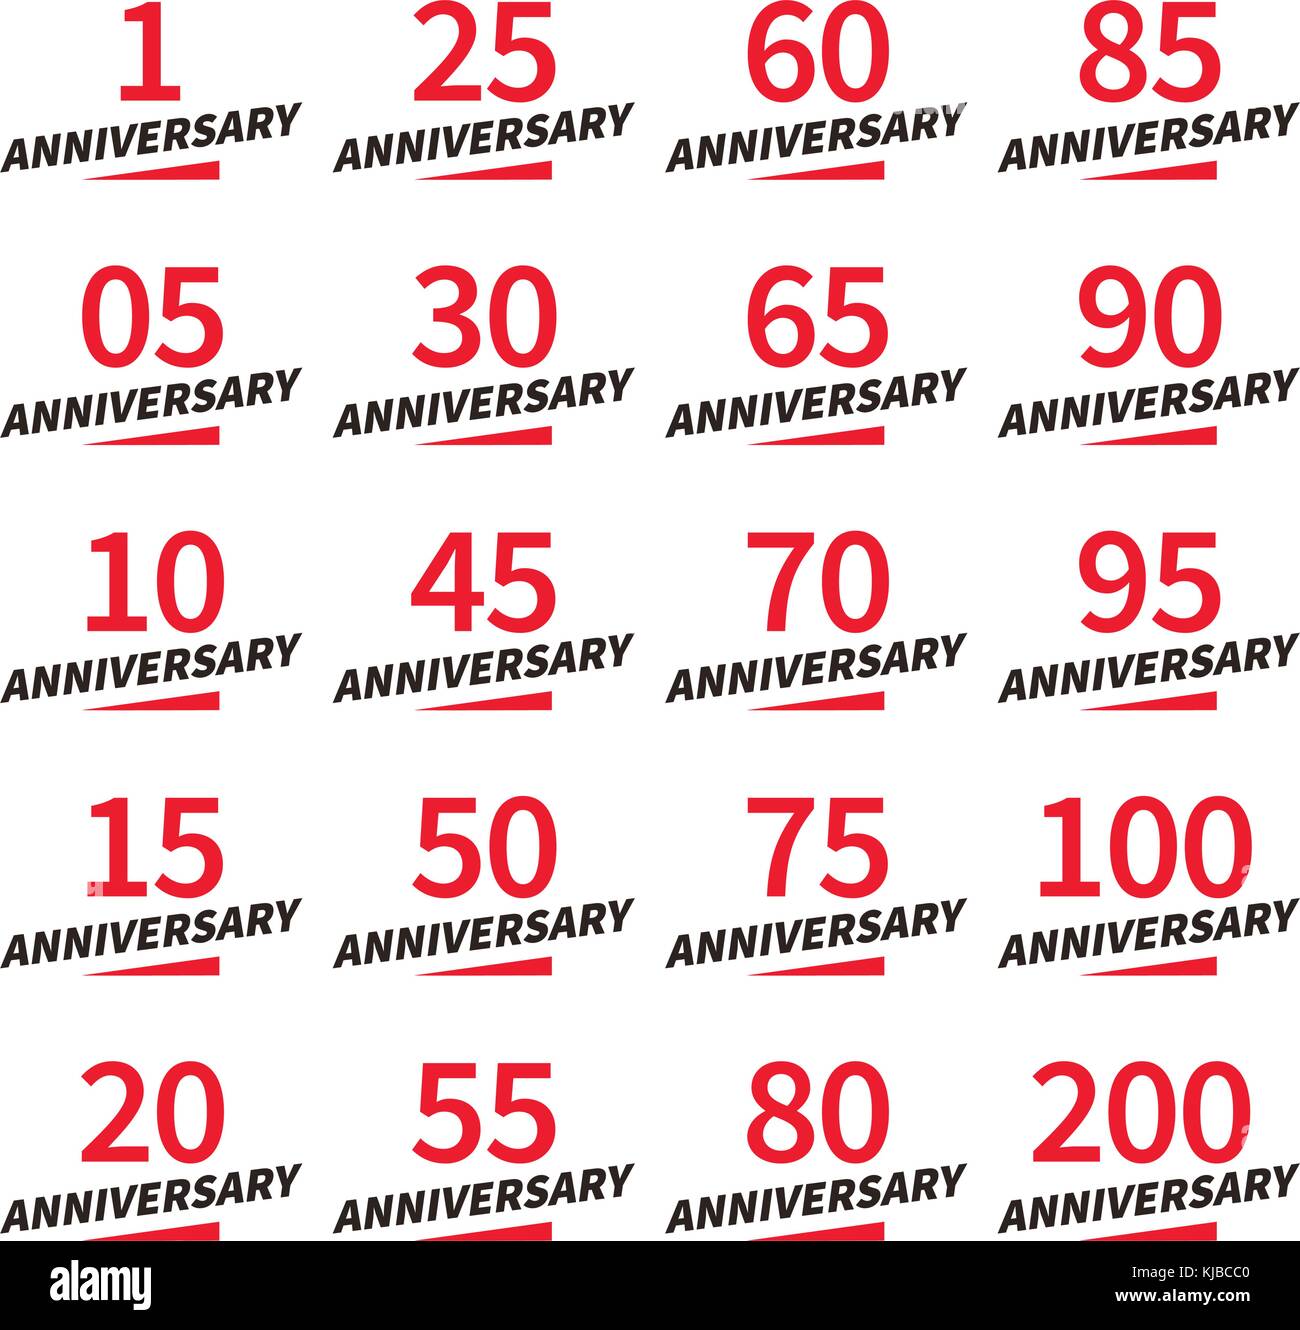 Isolierte rote und schwarze Farbe Zahlen mit Wort Jahre Ikonen Sammlung auf weißem Hintergrund, Geburtstag Jubiläum Grußkarte Elemente vektor Logos eingestellt Stock Vektor